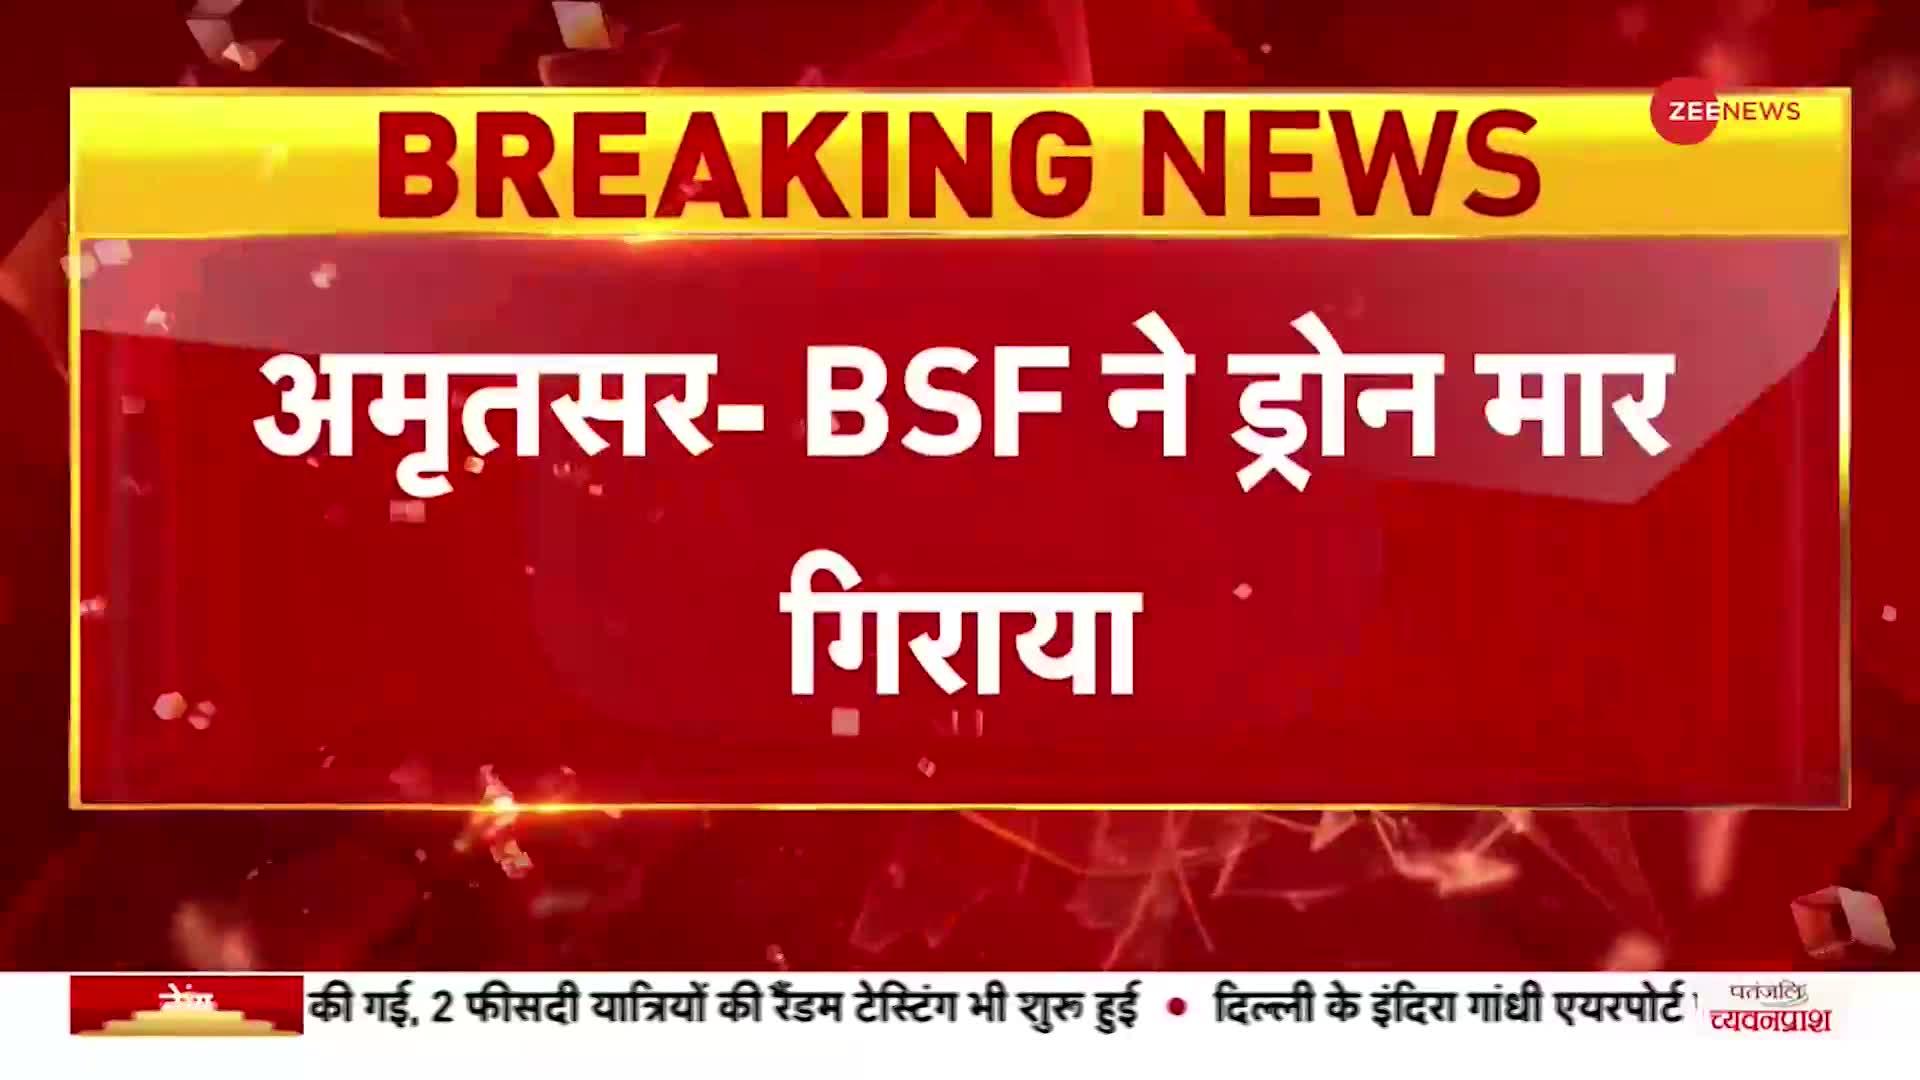 Breaking News: अमृतसर- सीमा के करीब BSF ने मार गिराया ड्रोन, पाकिस्तान की साजिश को किया नाकाम